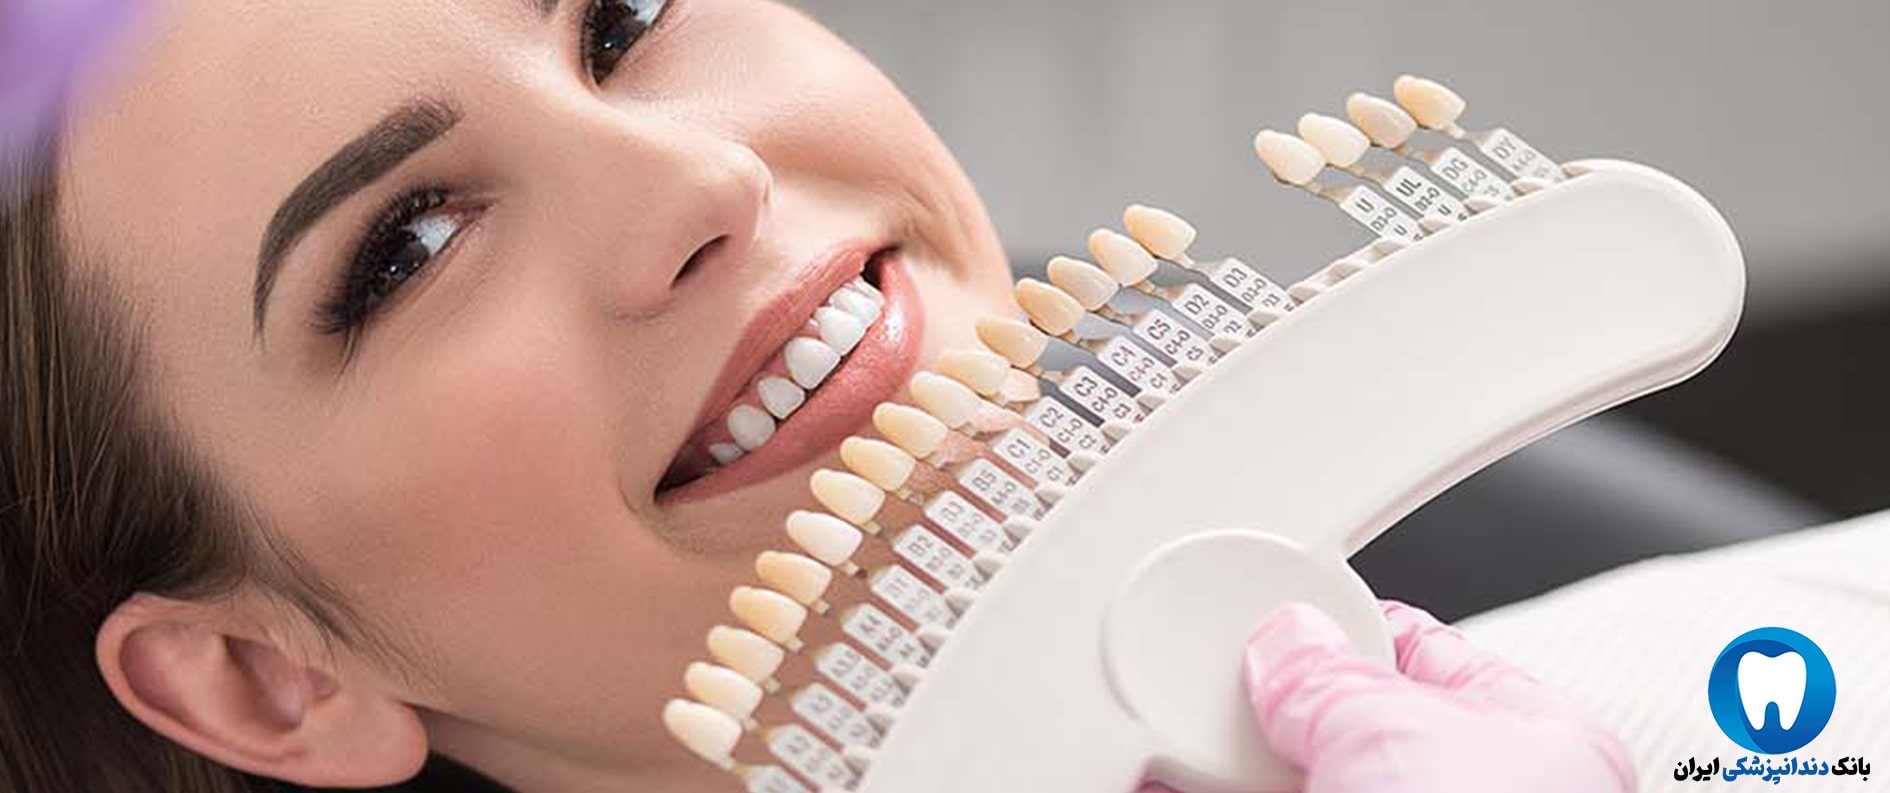 شماره تلفن بهترین دکتر دندانپزشک زیبایی در اصفهان